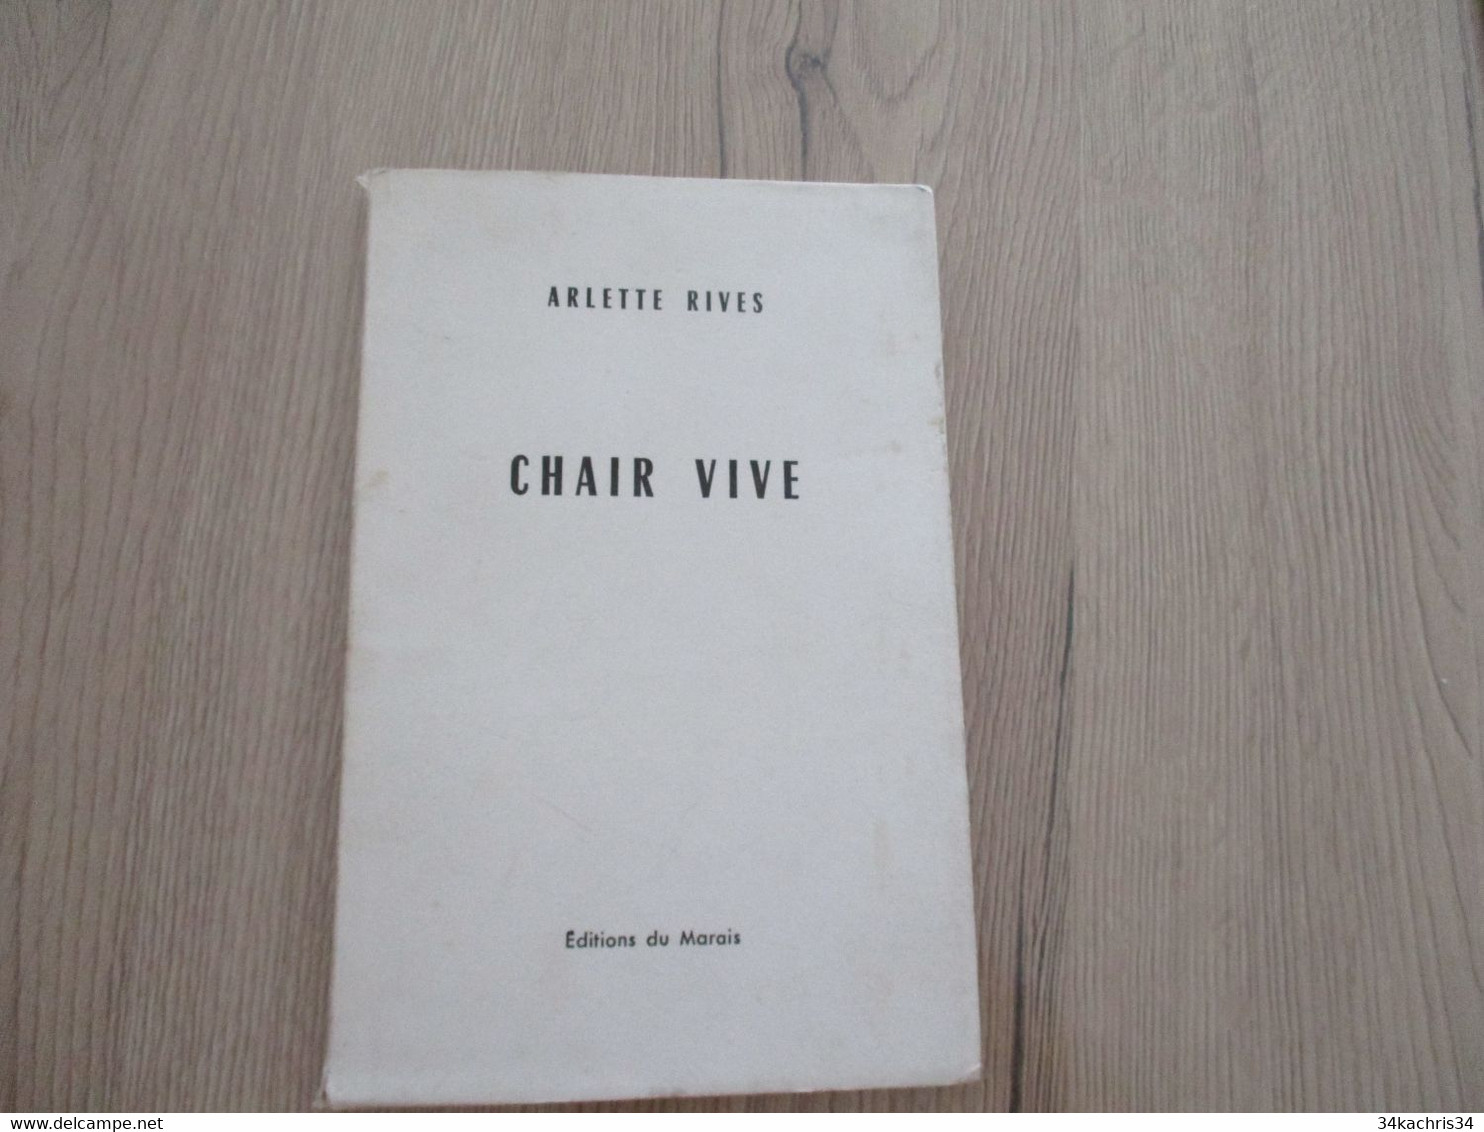 Poèsie Chez EdIt Marais Arlette Rives Chair Vive Poème En édition Originale + 1 Envoi + 1 Poème Original Sybellus - Franse Schrijvers